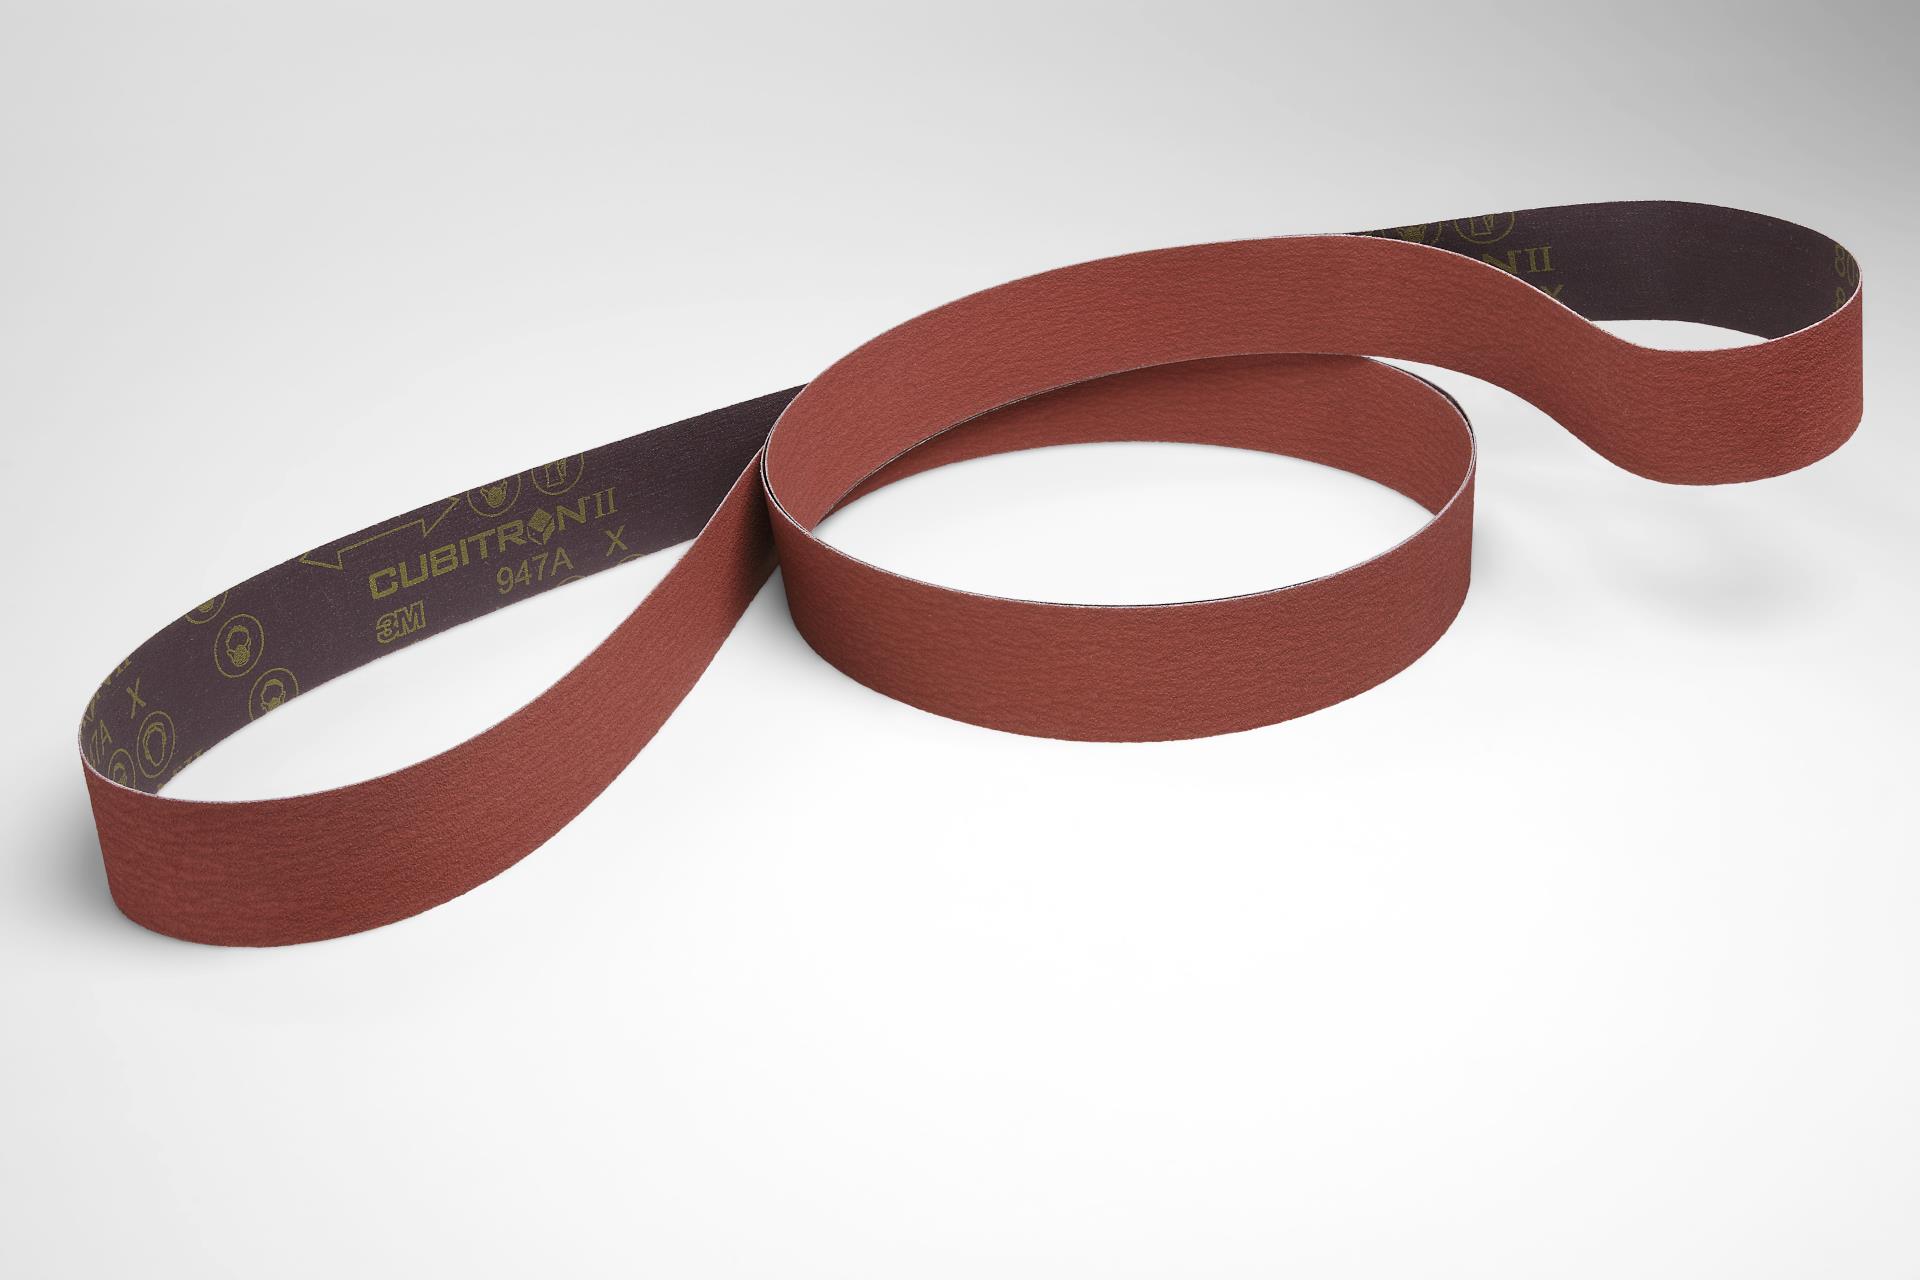 Scallop B 1/2 in x 18 in 120 X-Weight 3M Cloth Belt 947D Full-Flex Fabri-lok 